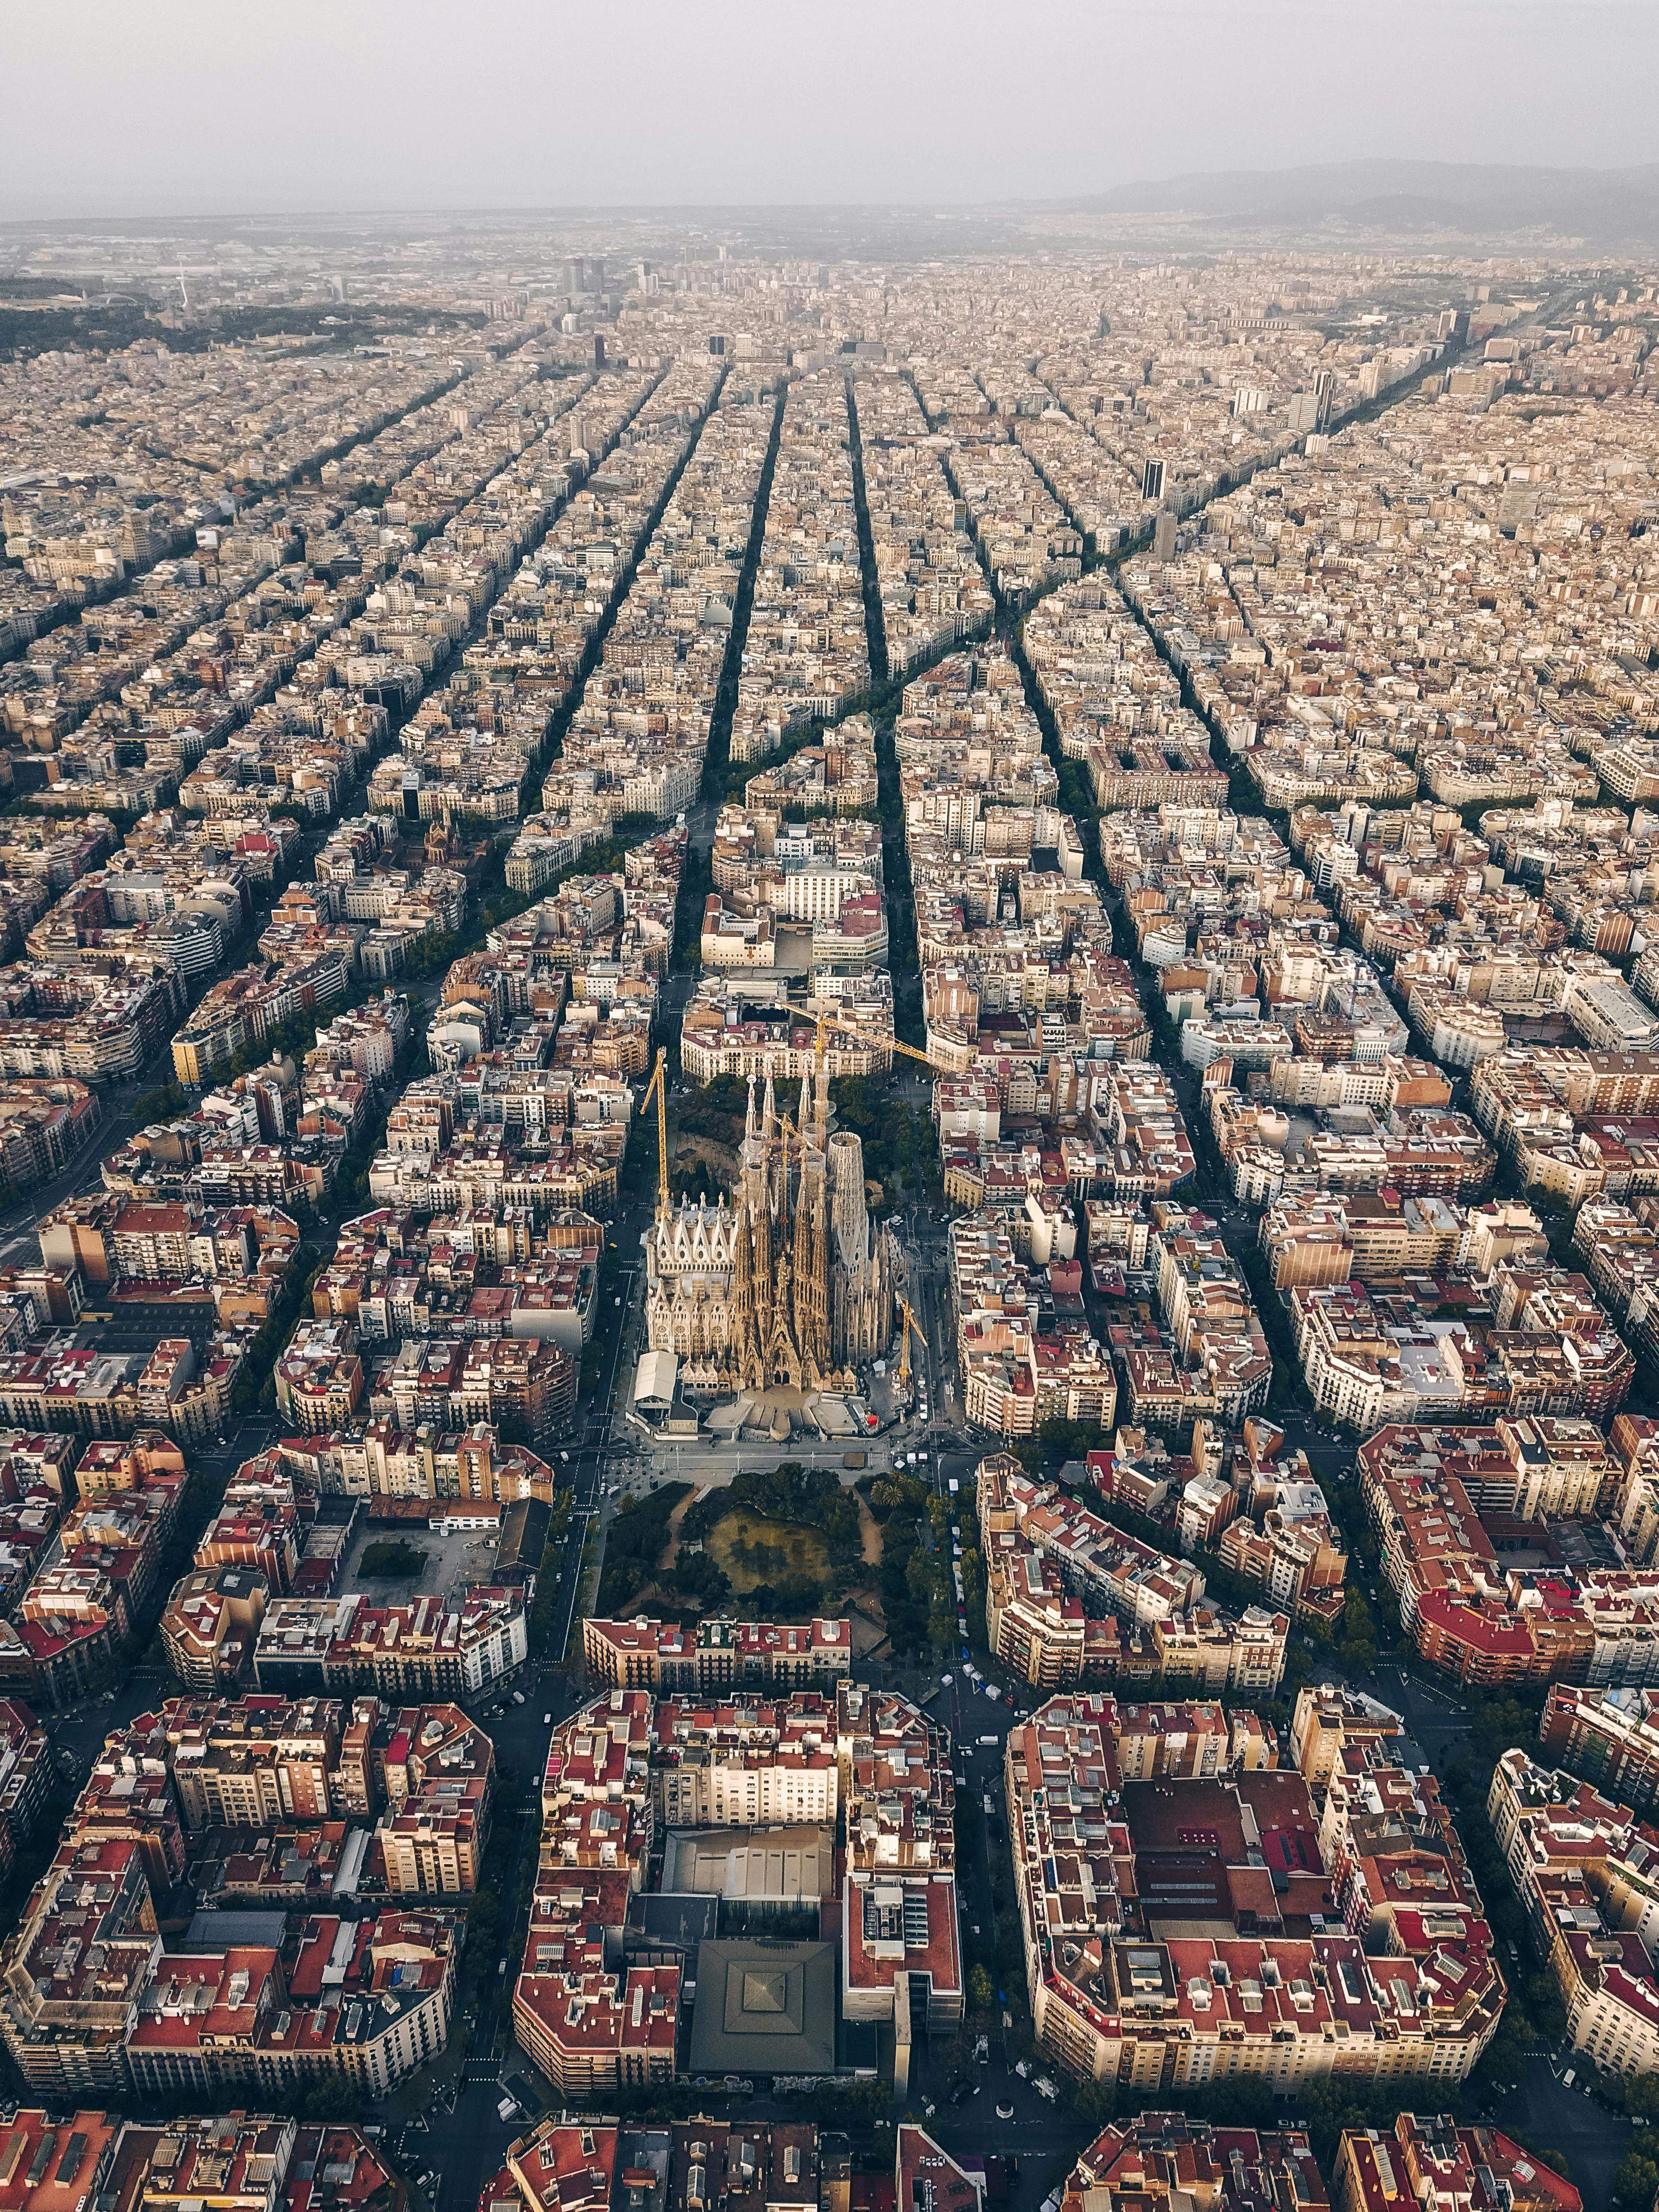 Estas son las calles más bonitas de Barcelona según la inteligencia artificial